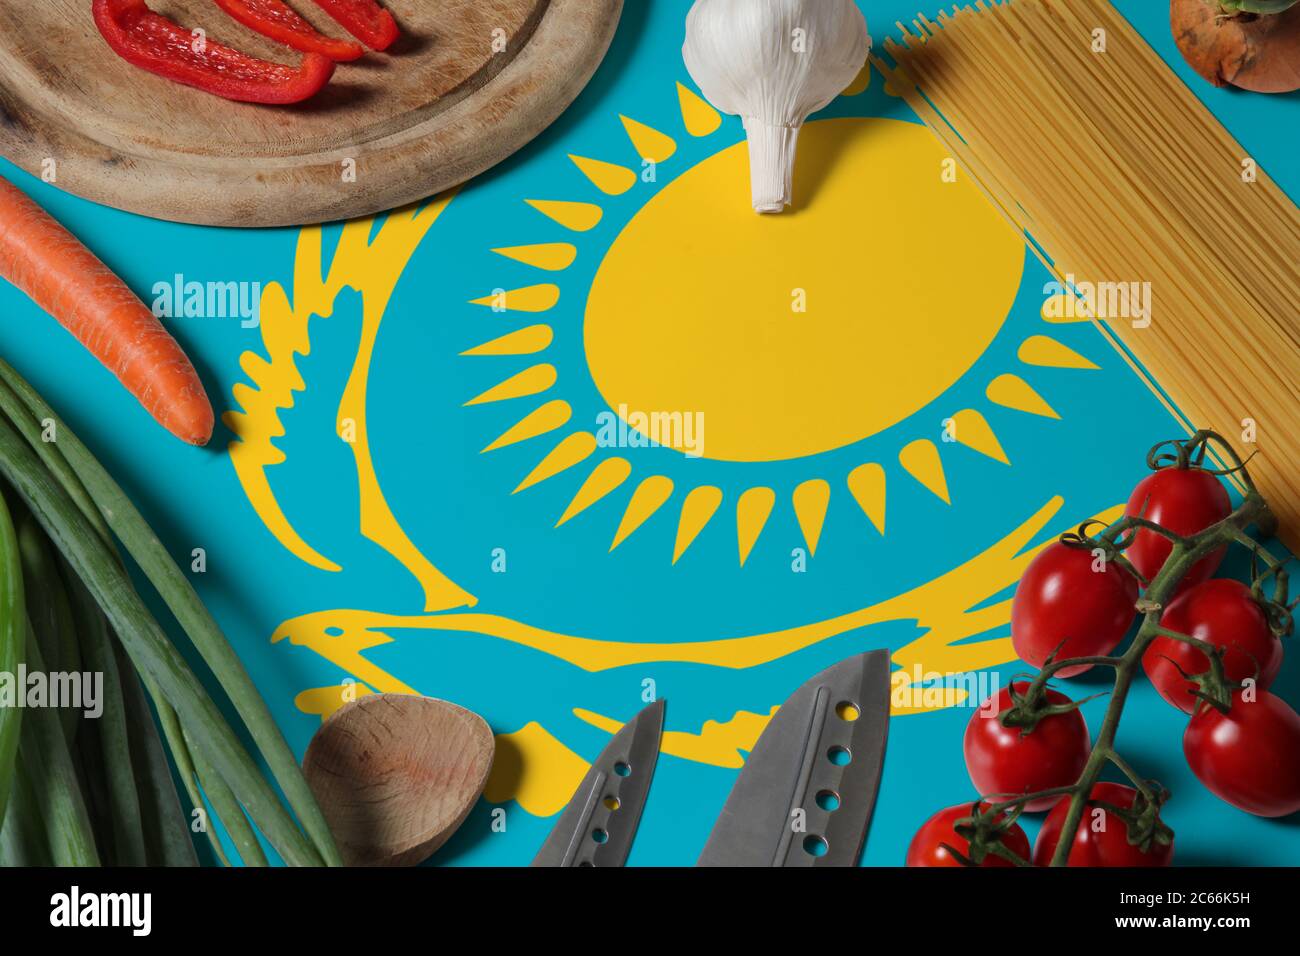 Drapeau du Kazakhstan sur les légumes frais et couteau concept table en bois. Concept de cuisine avec thème de préparation. Banque D'Images